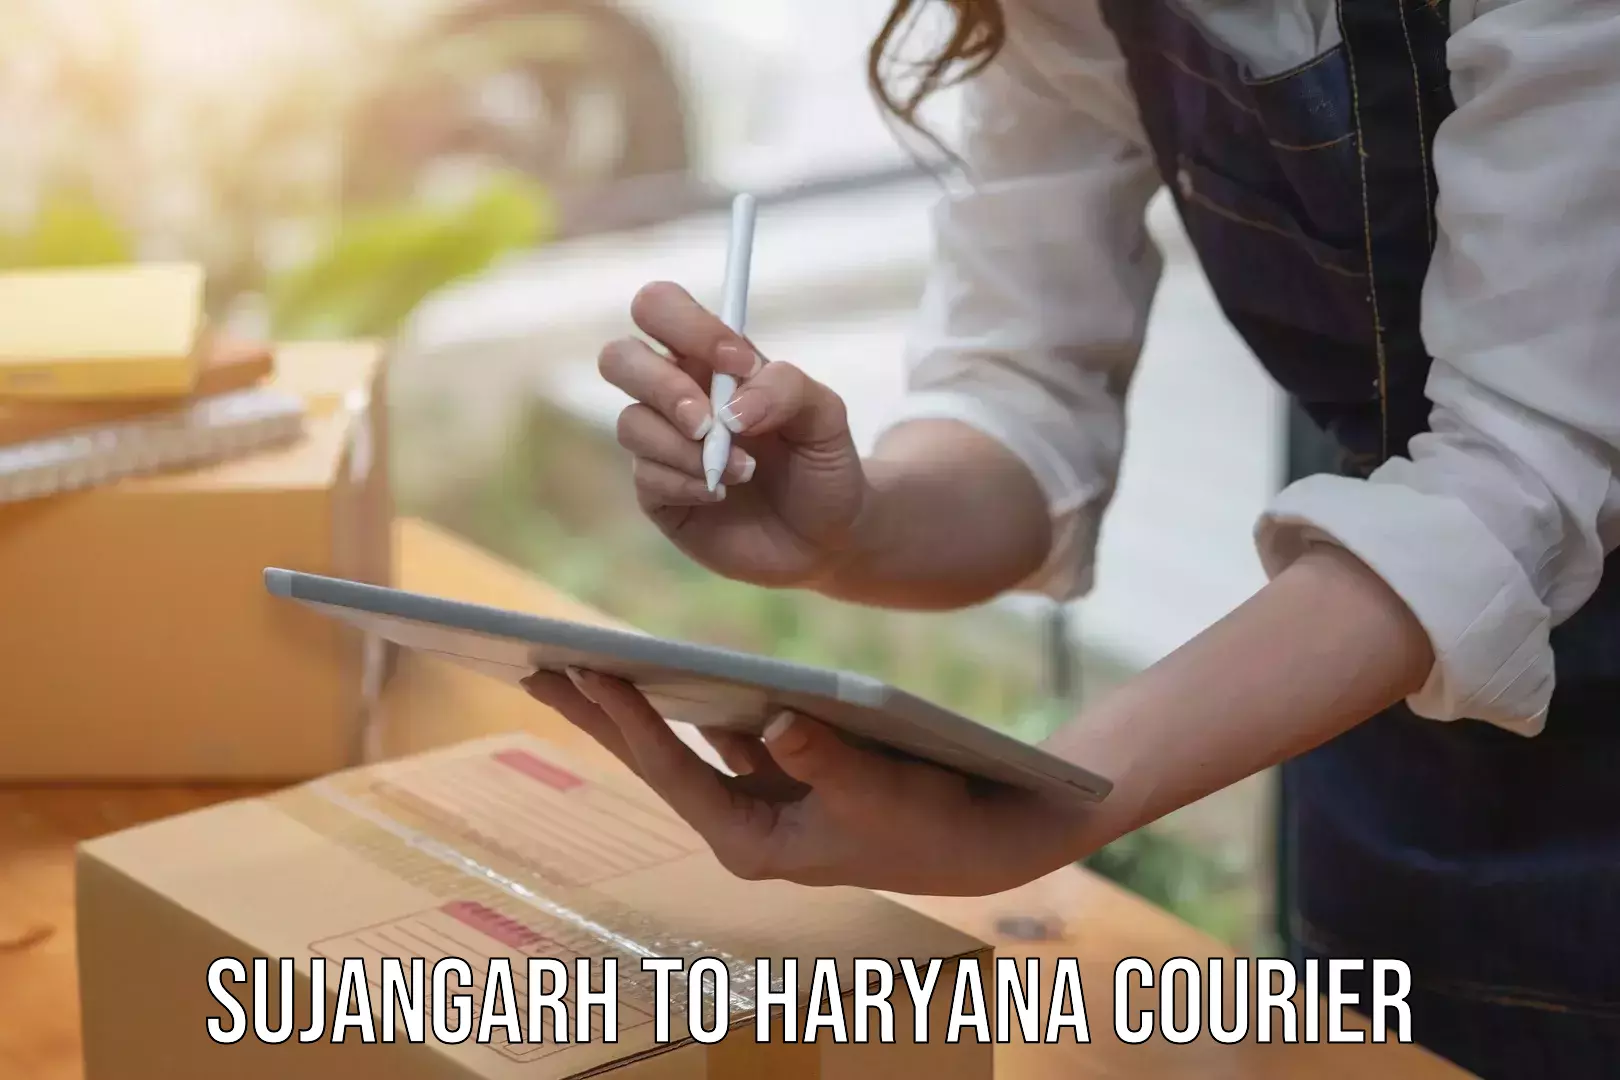 Courier insurance Sujangarh to Haryana